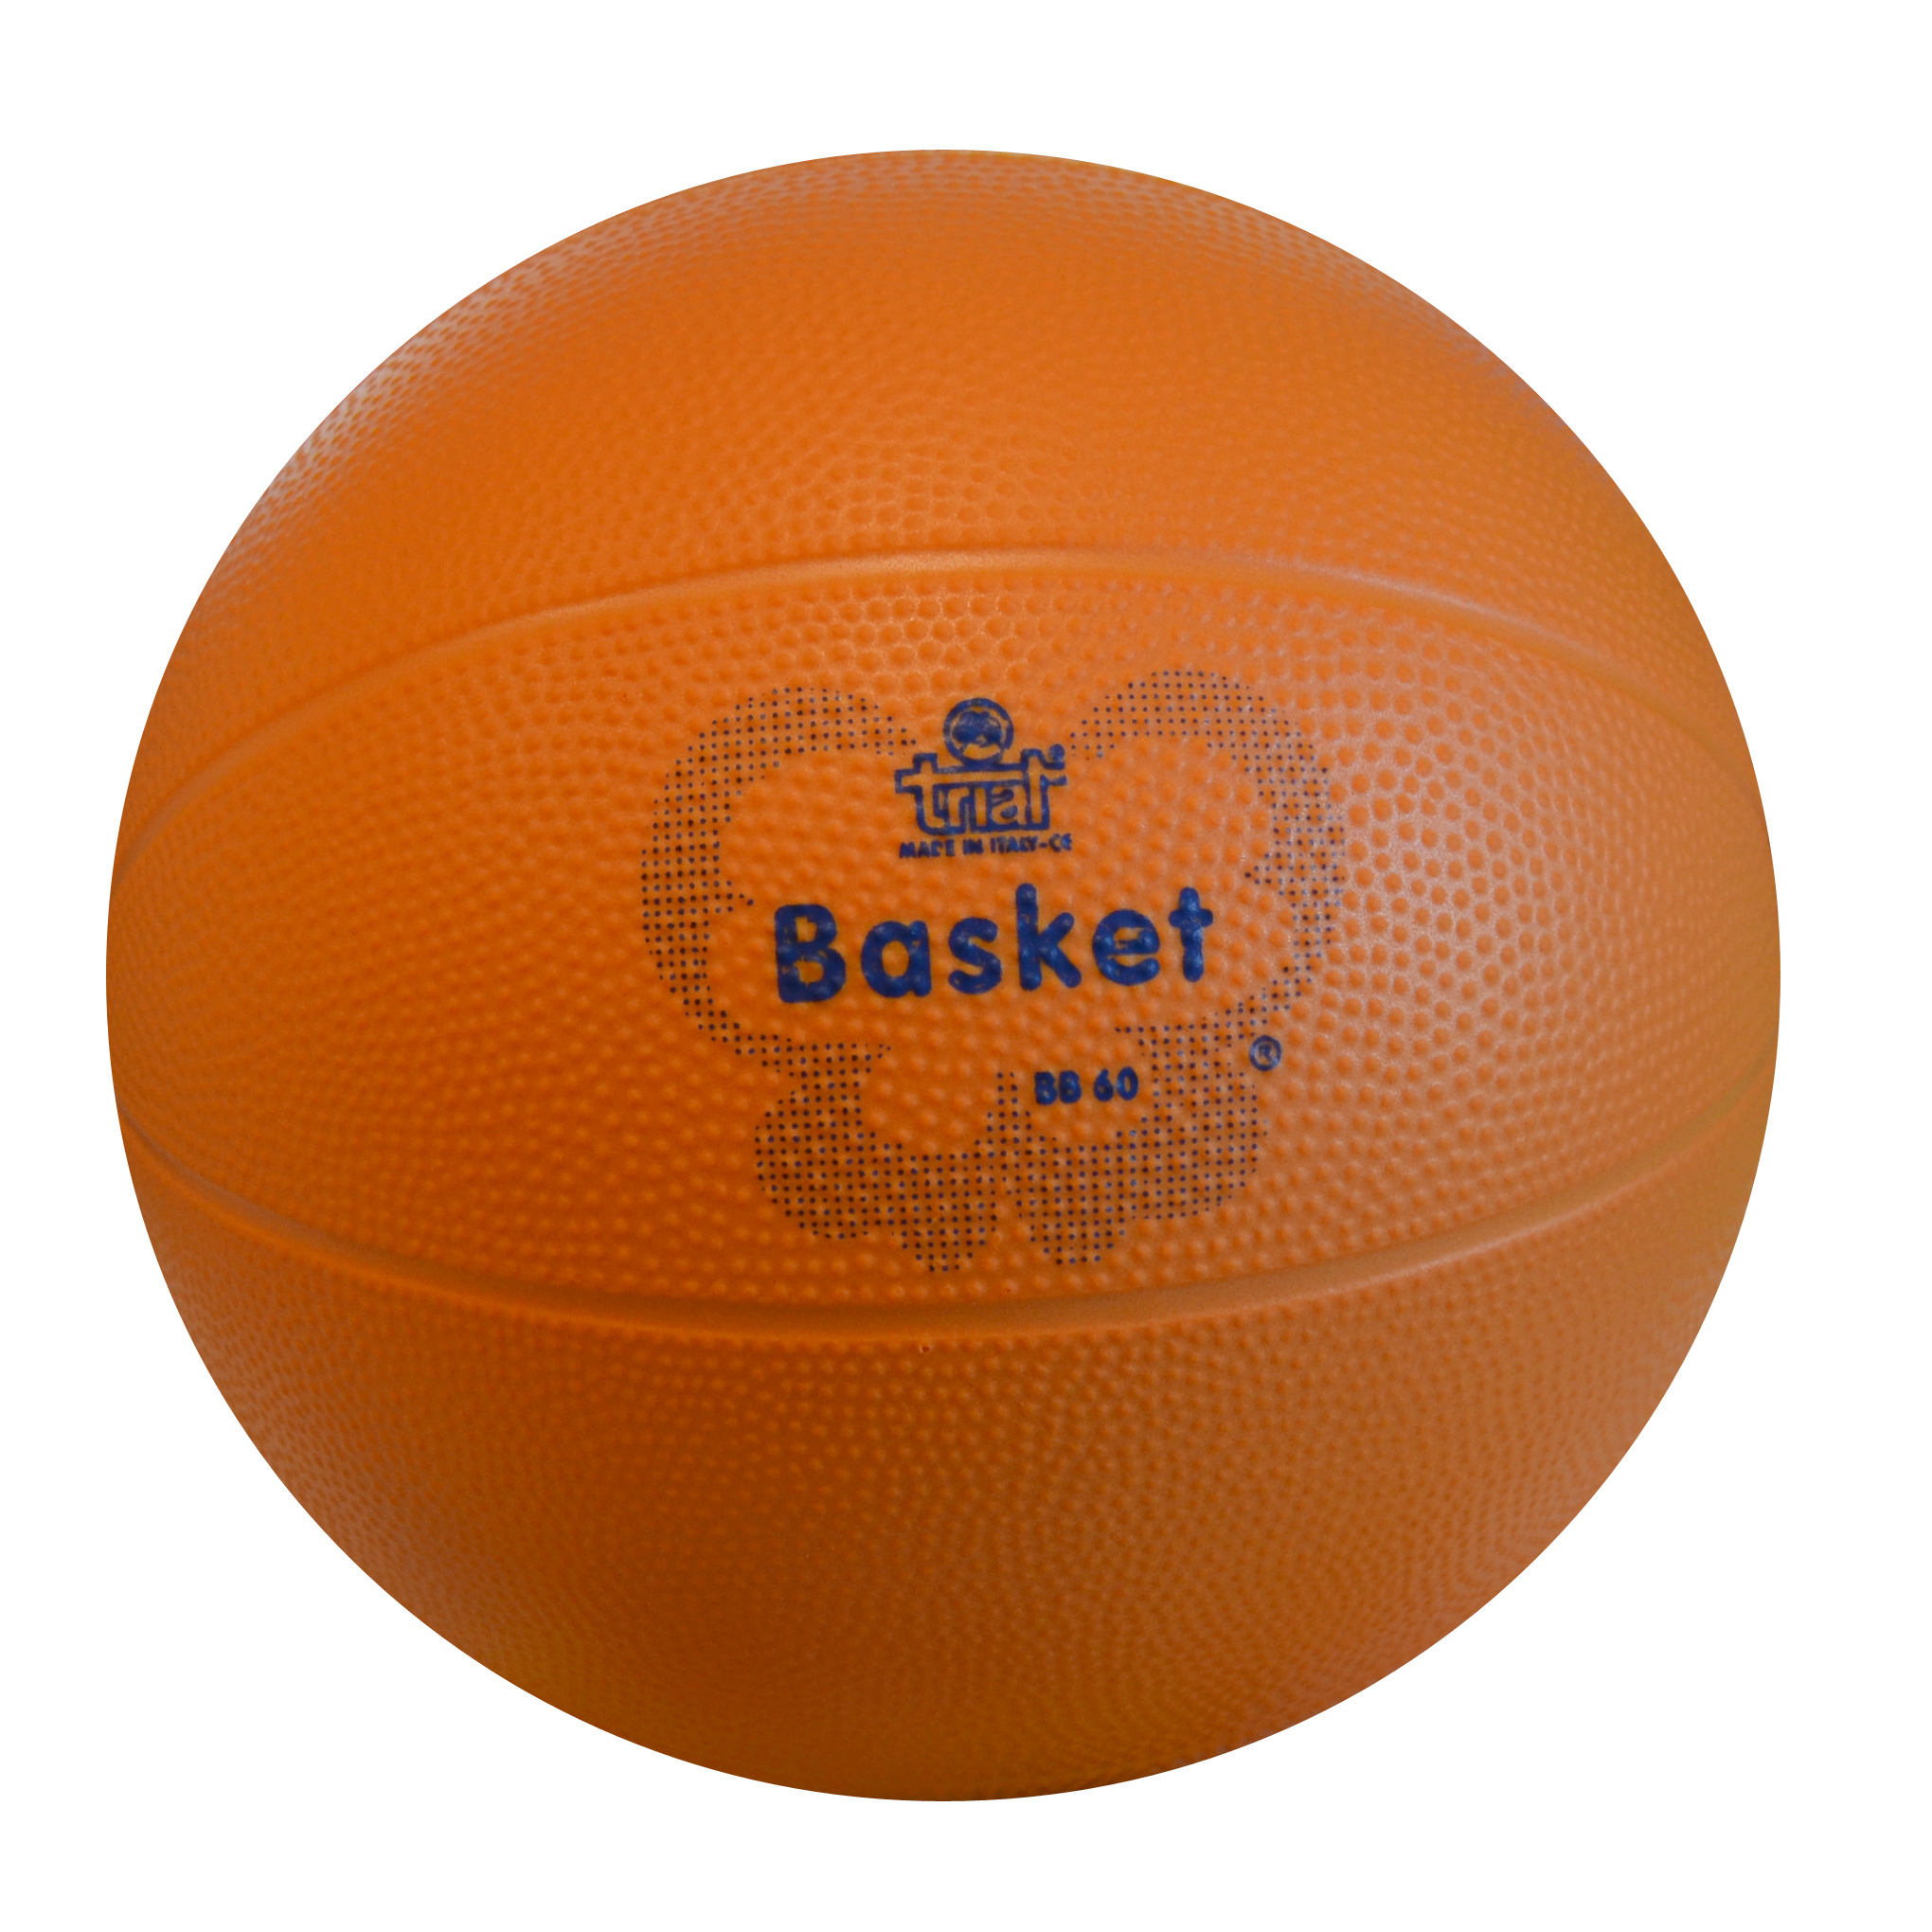 Pallone da basket per bambini: come sceglierlo?